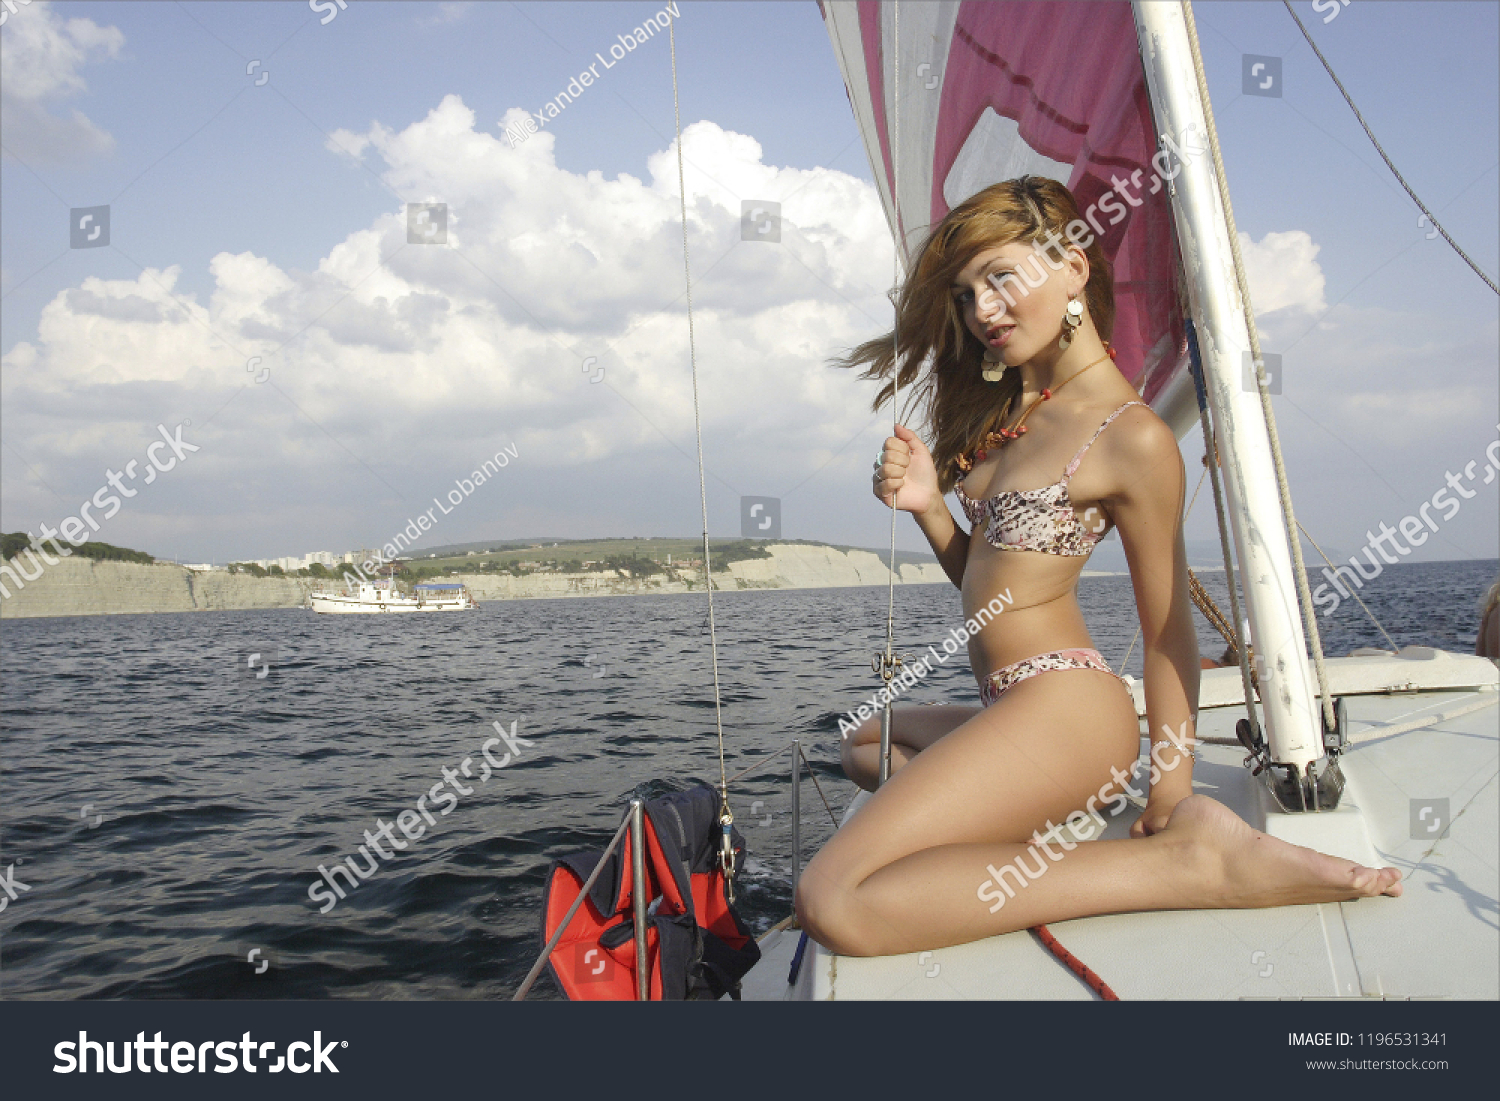 В средиземном море богатая куколка голышом резвится на яхте 